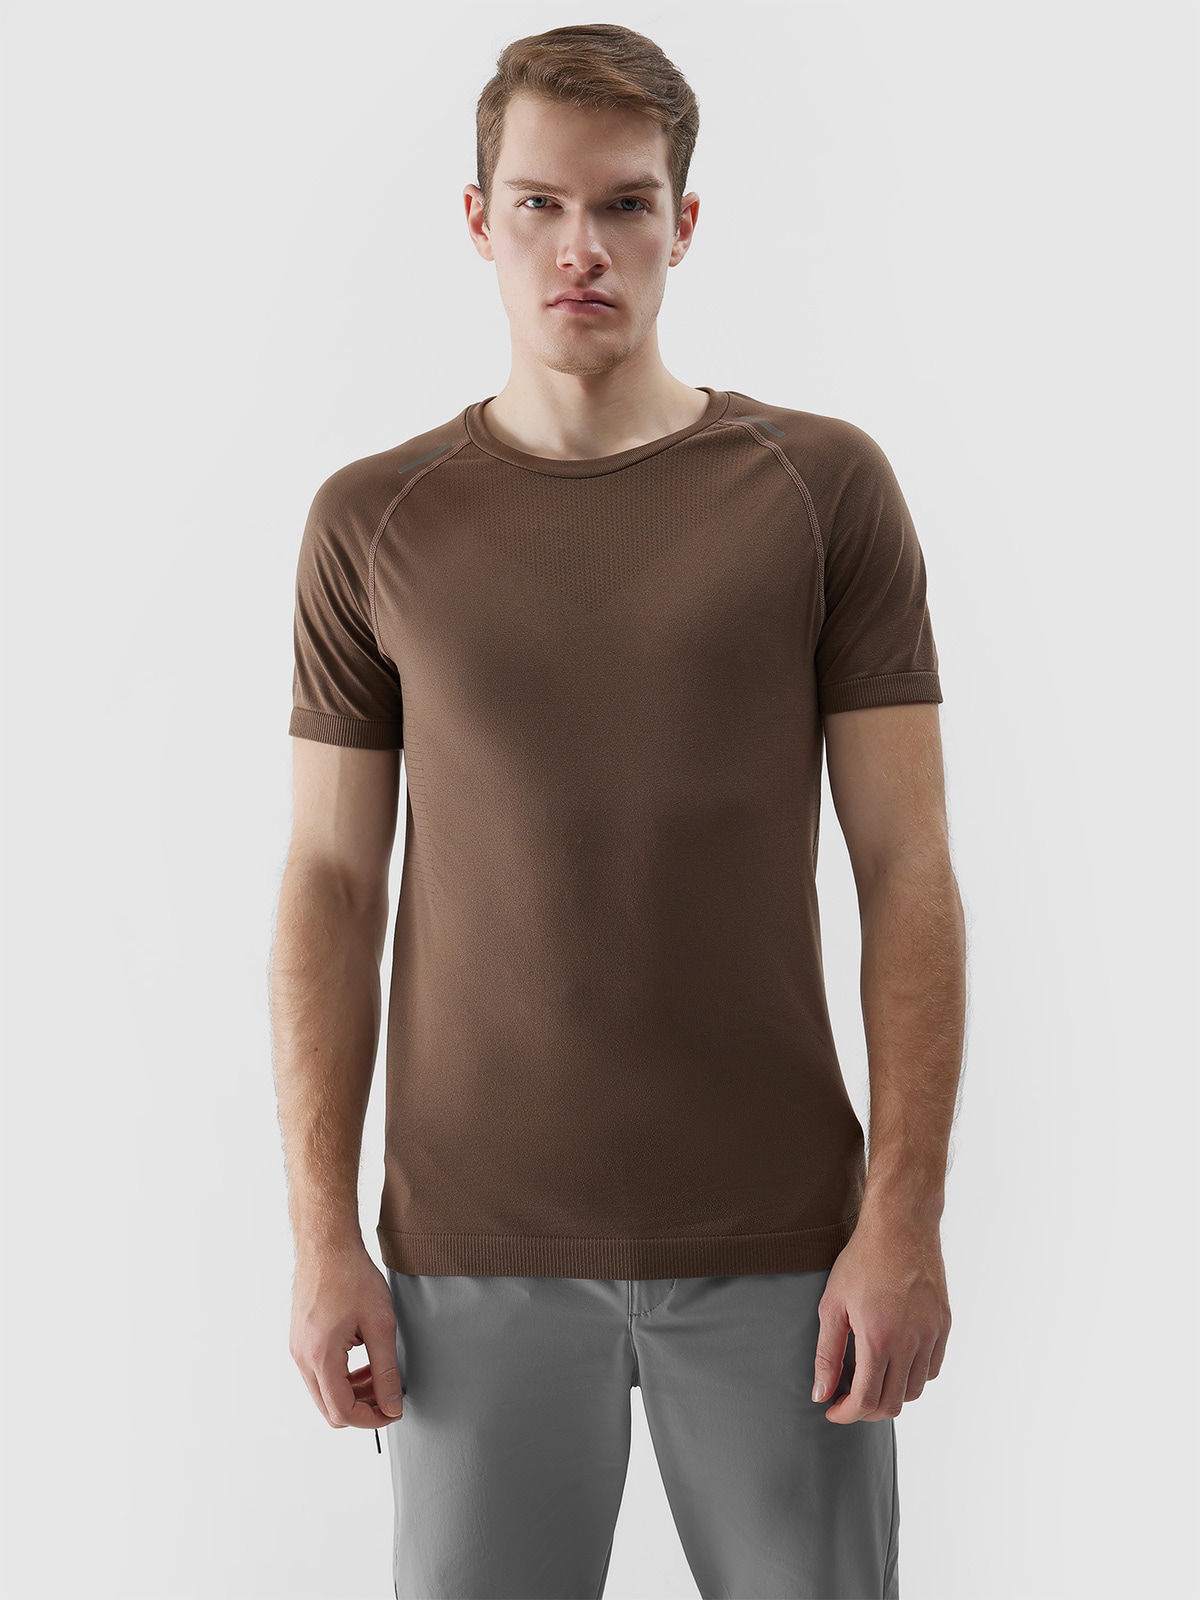 Pánske bezšvové bežecké tričko na trail running - hnedé